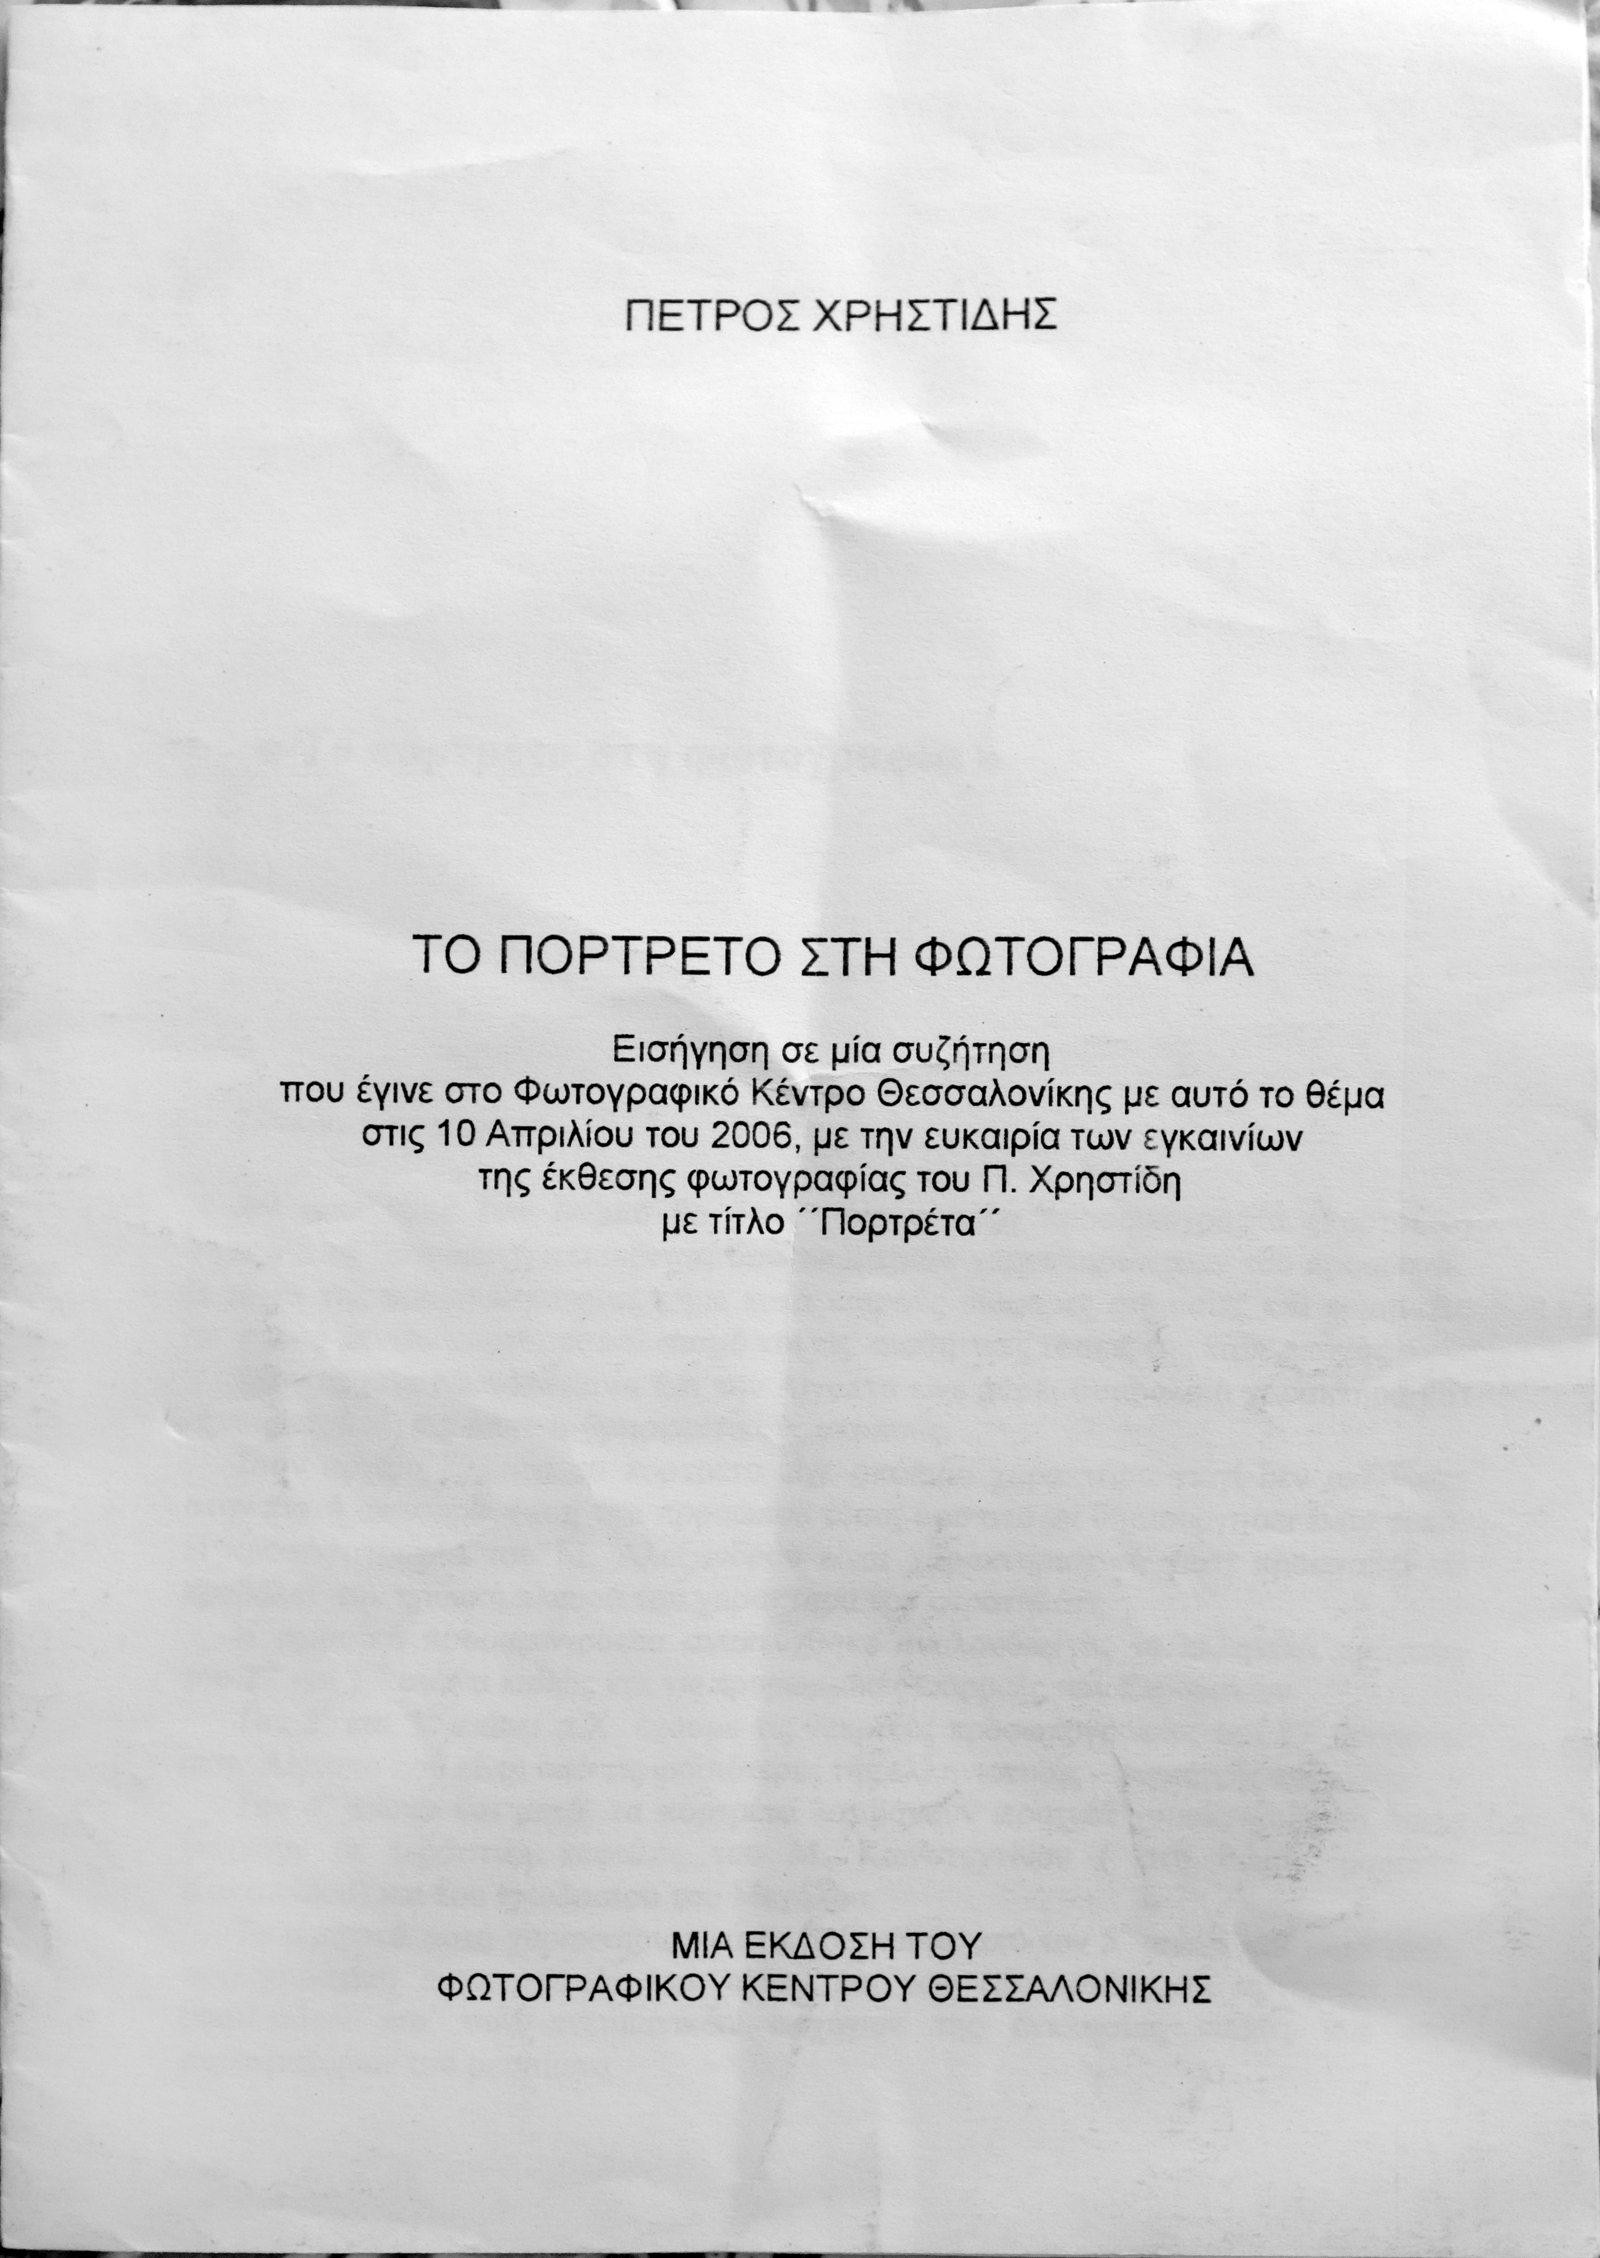 Το εξώφυλλο της μπροσούρας με την εισήγηση για τη σχετική συζήτηση που συνόδευσε την έκθεση